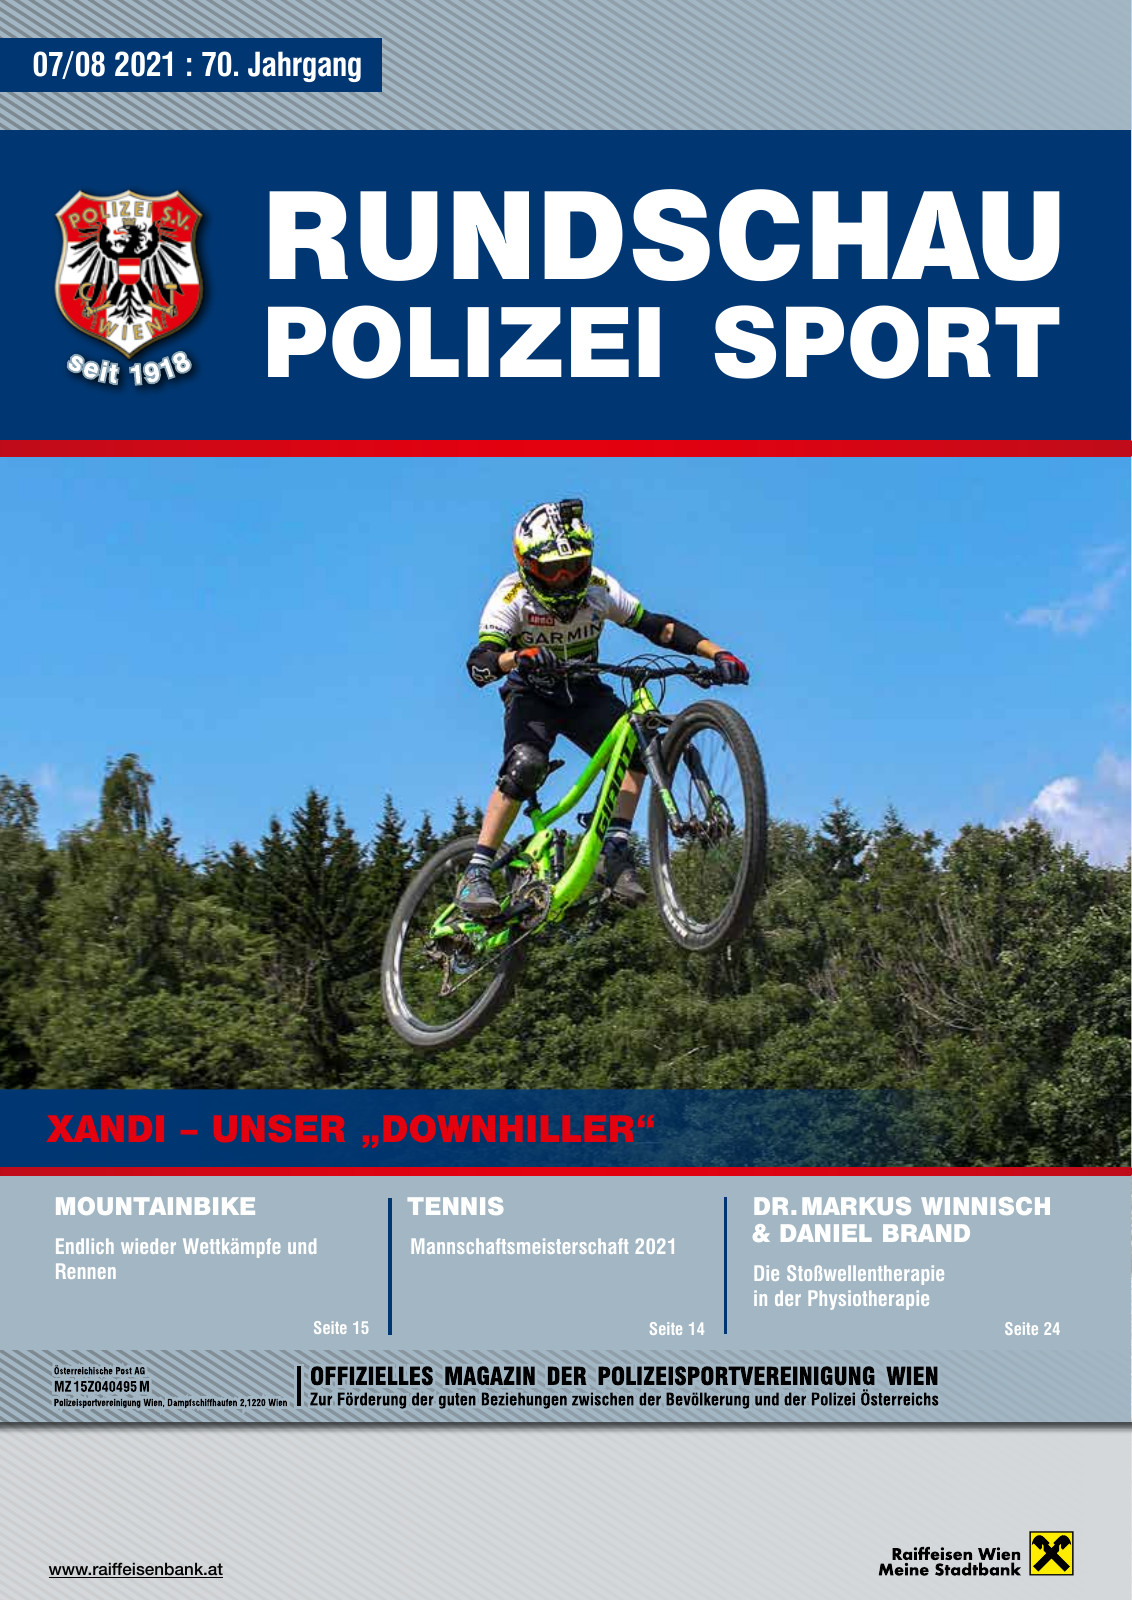 Vorschau Rundschau Polizei Sport 07-08/2021 Seite 1